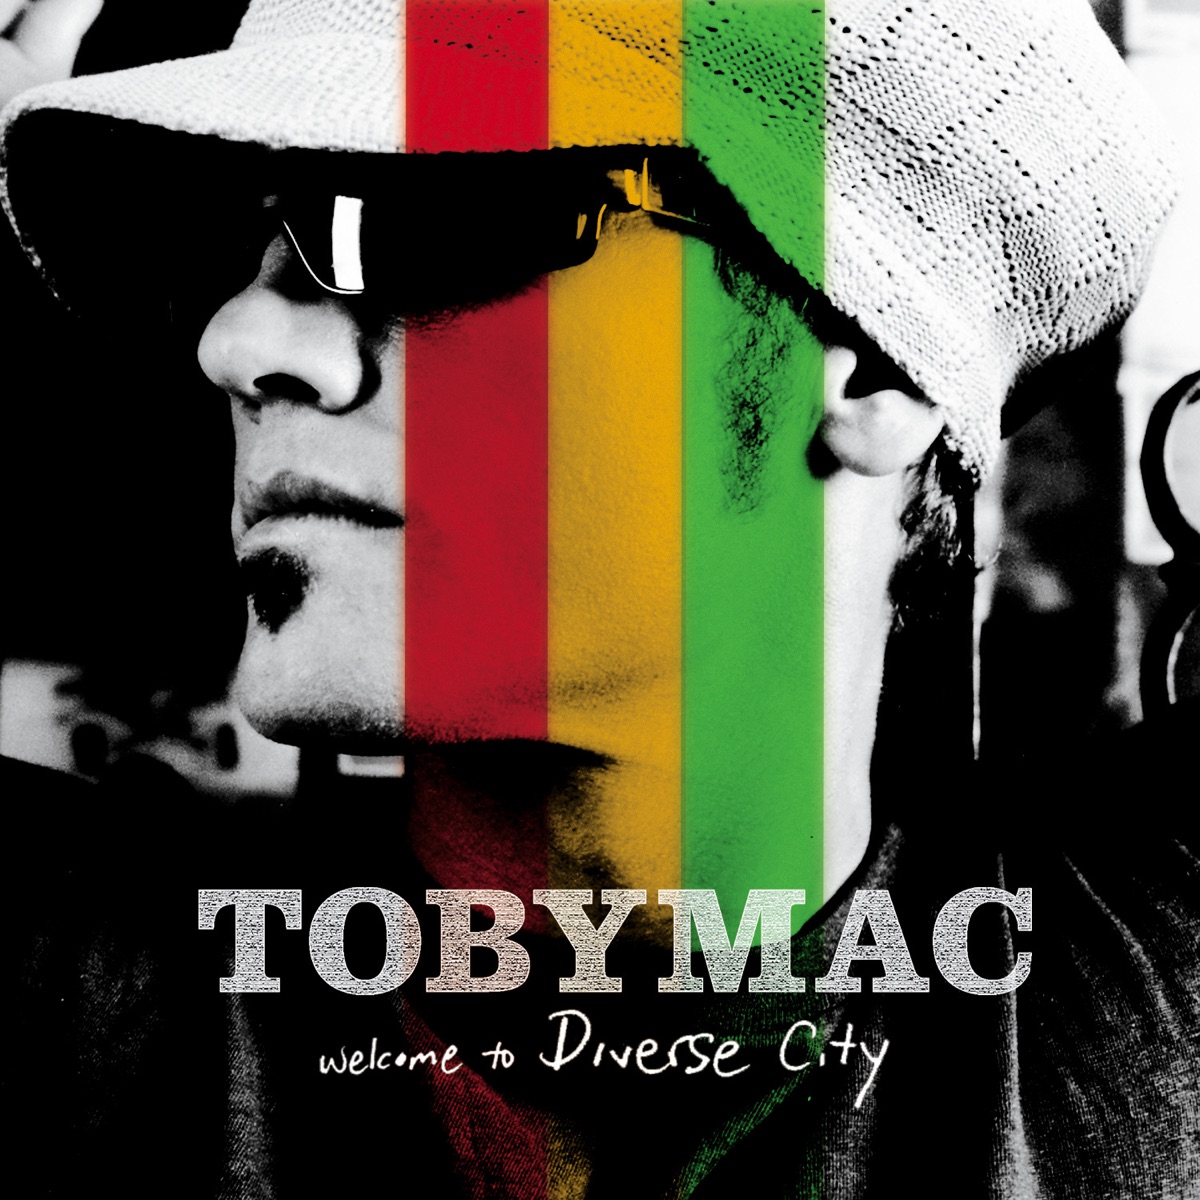 TobyMac - Promised Land (with lyrics)(2021) 